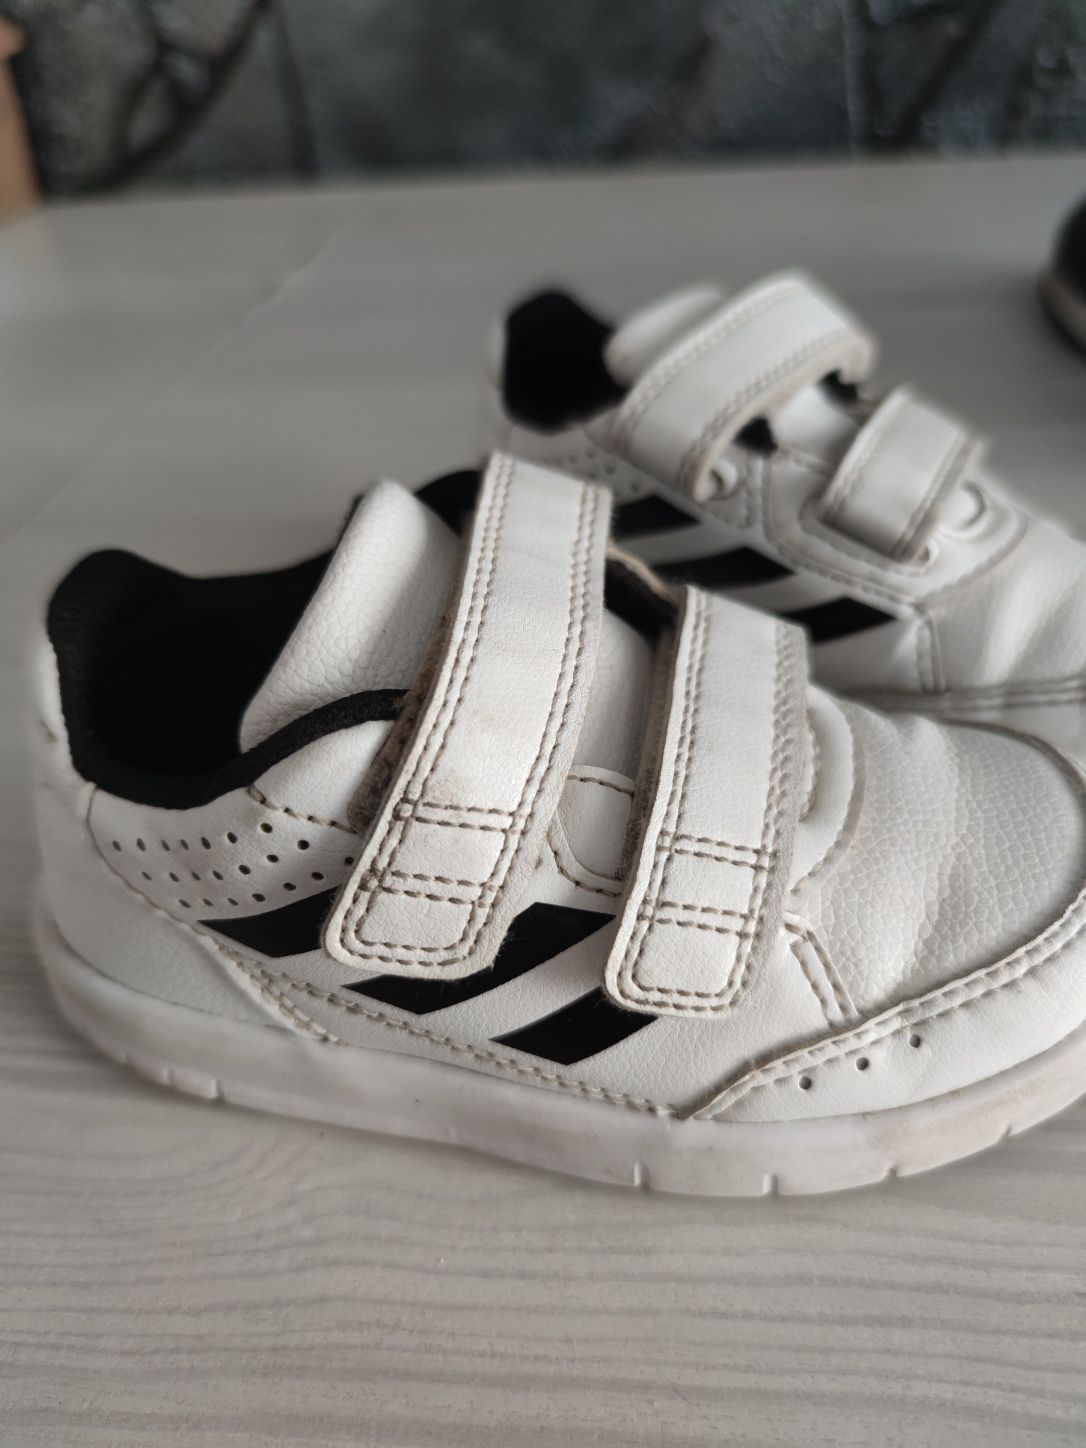 Adidas buty chłopięce białe buciki sportowe adidasy rozmiar 23 23,5